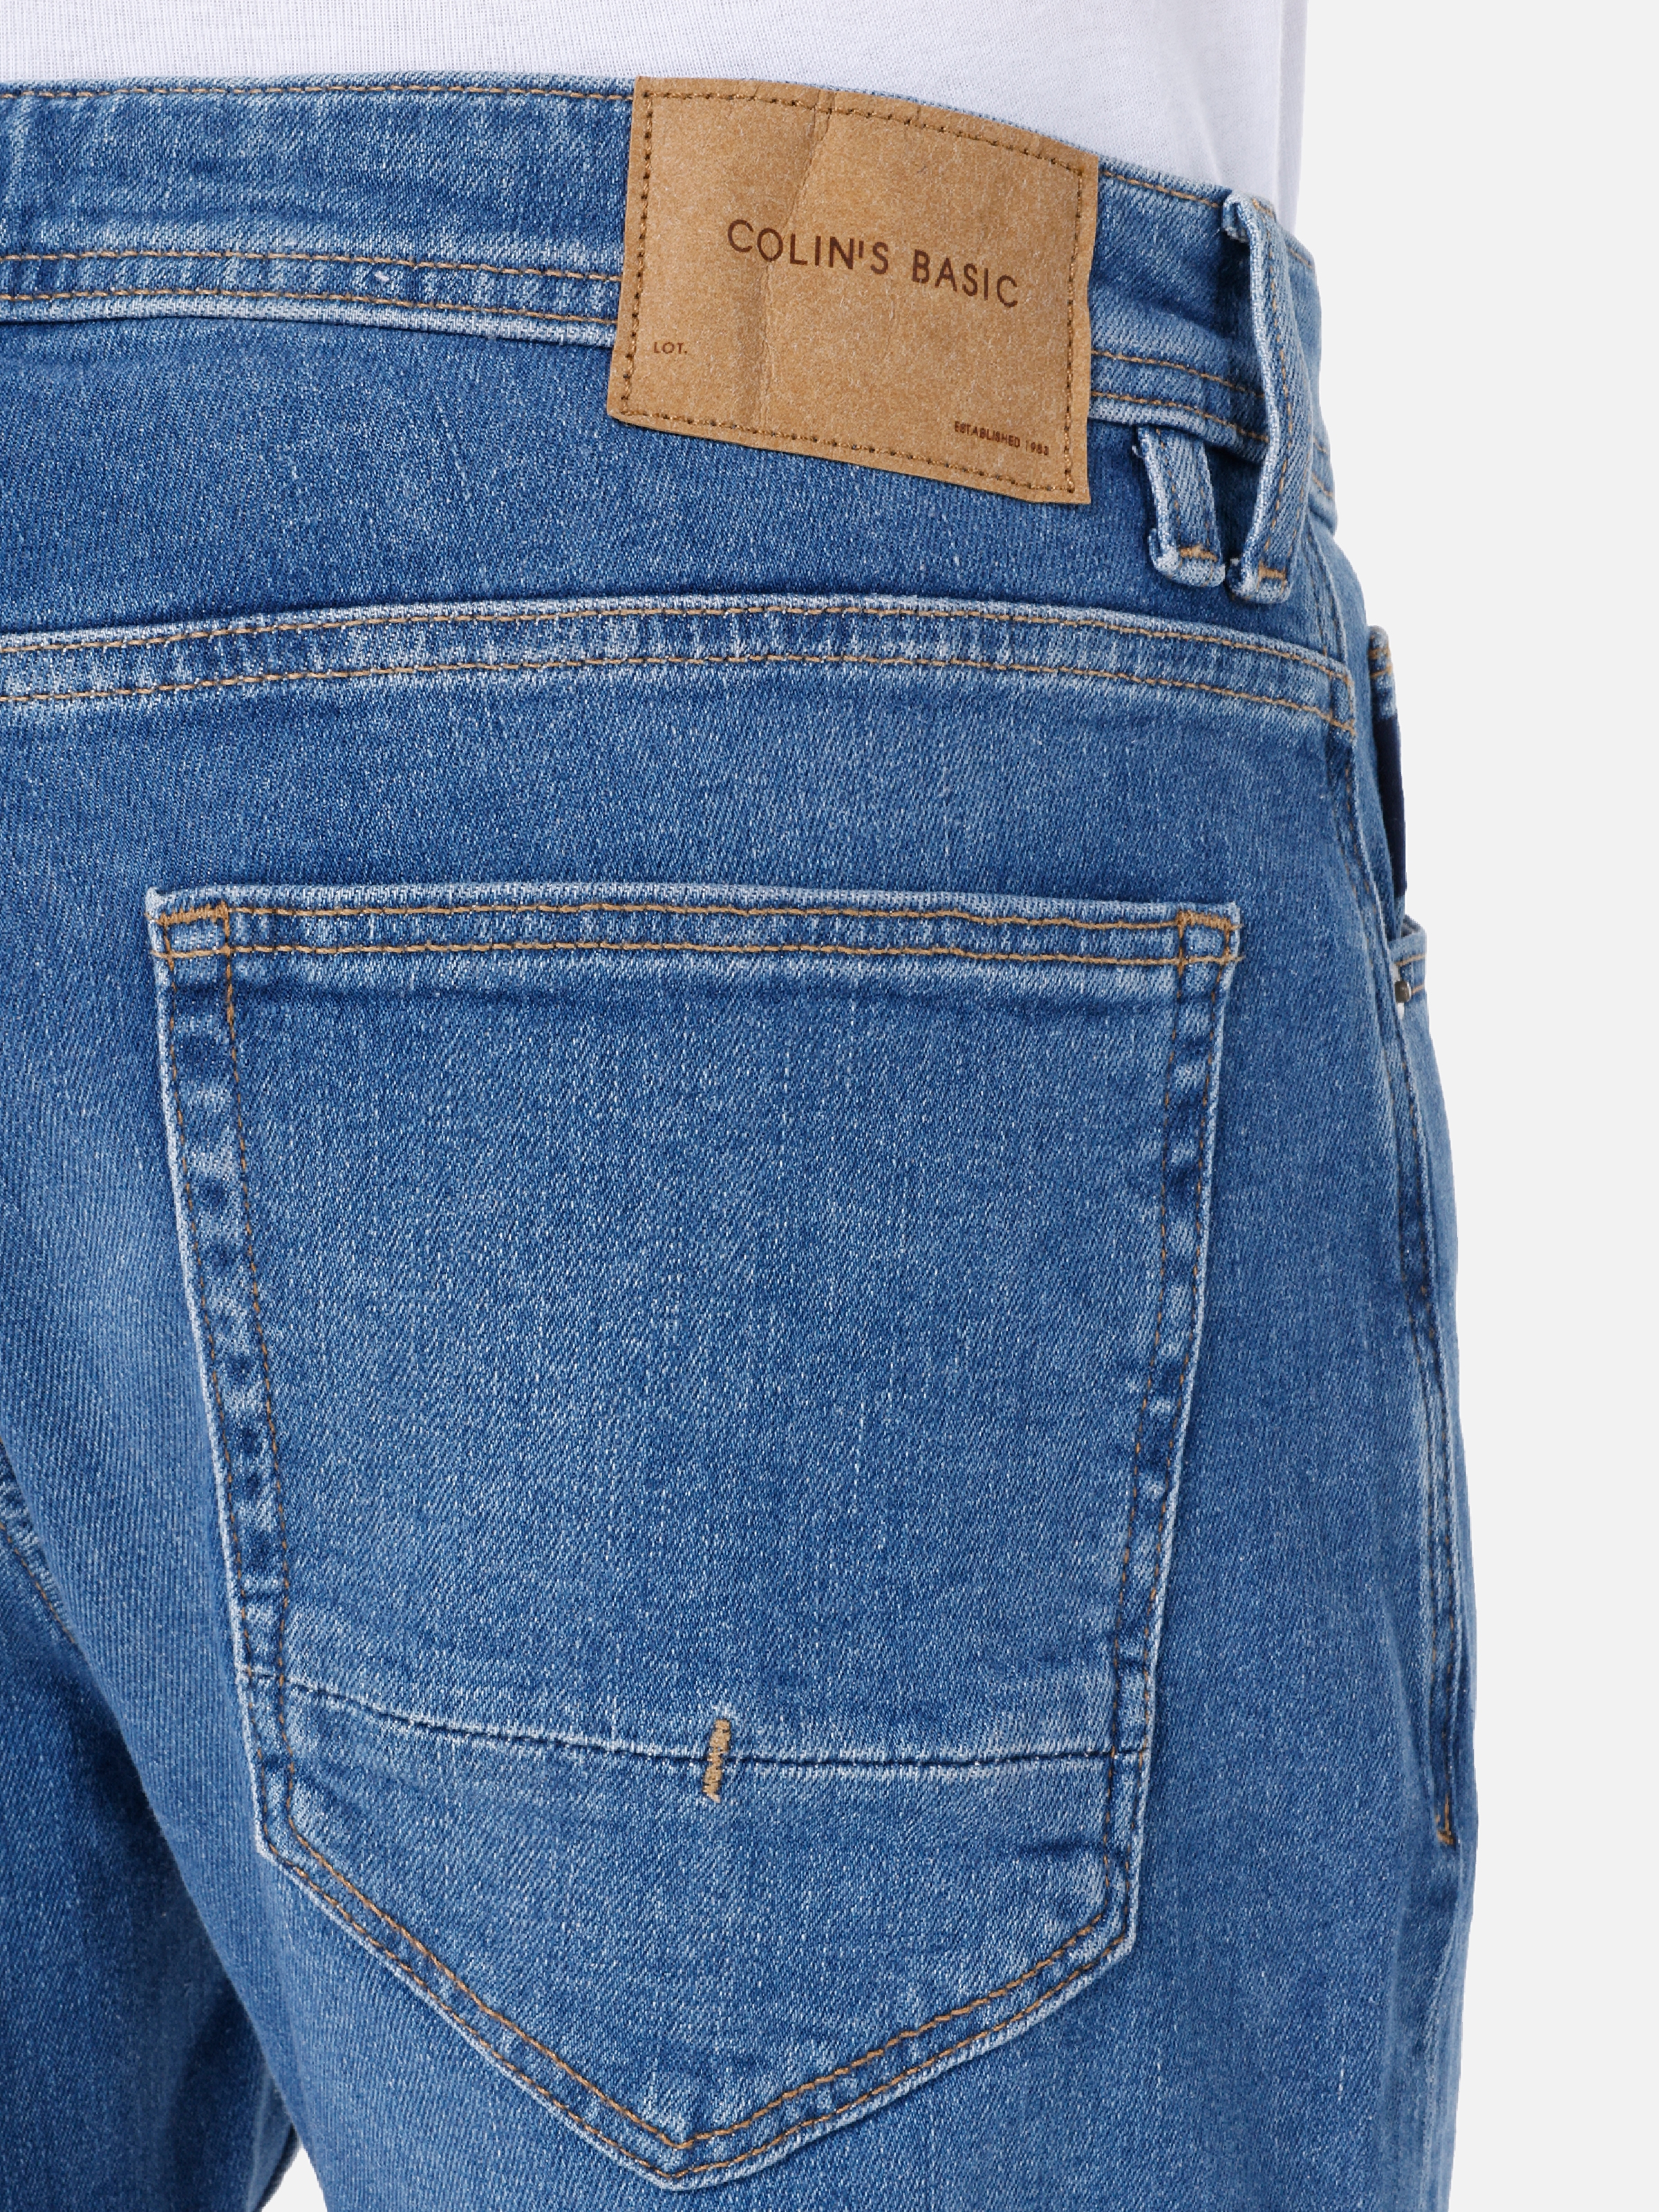 Afișați detalii pentru Pantaloni De Barbati Denim Regular Fit 067 JACK 